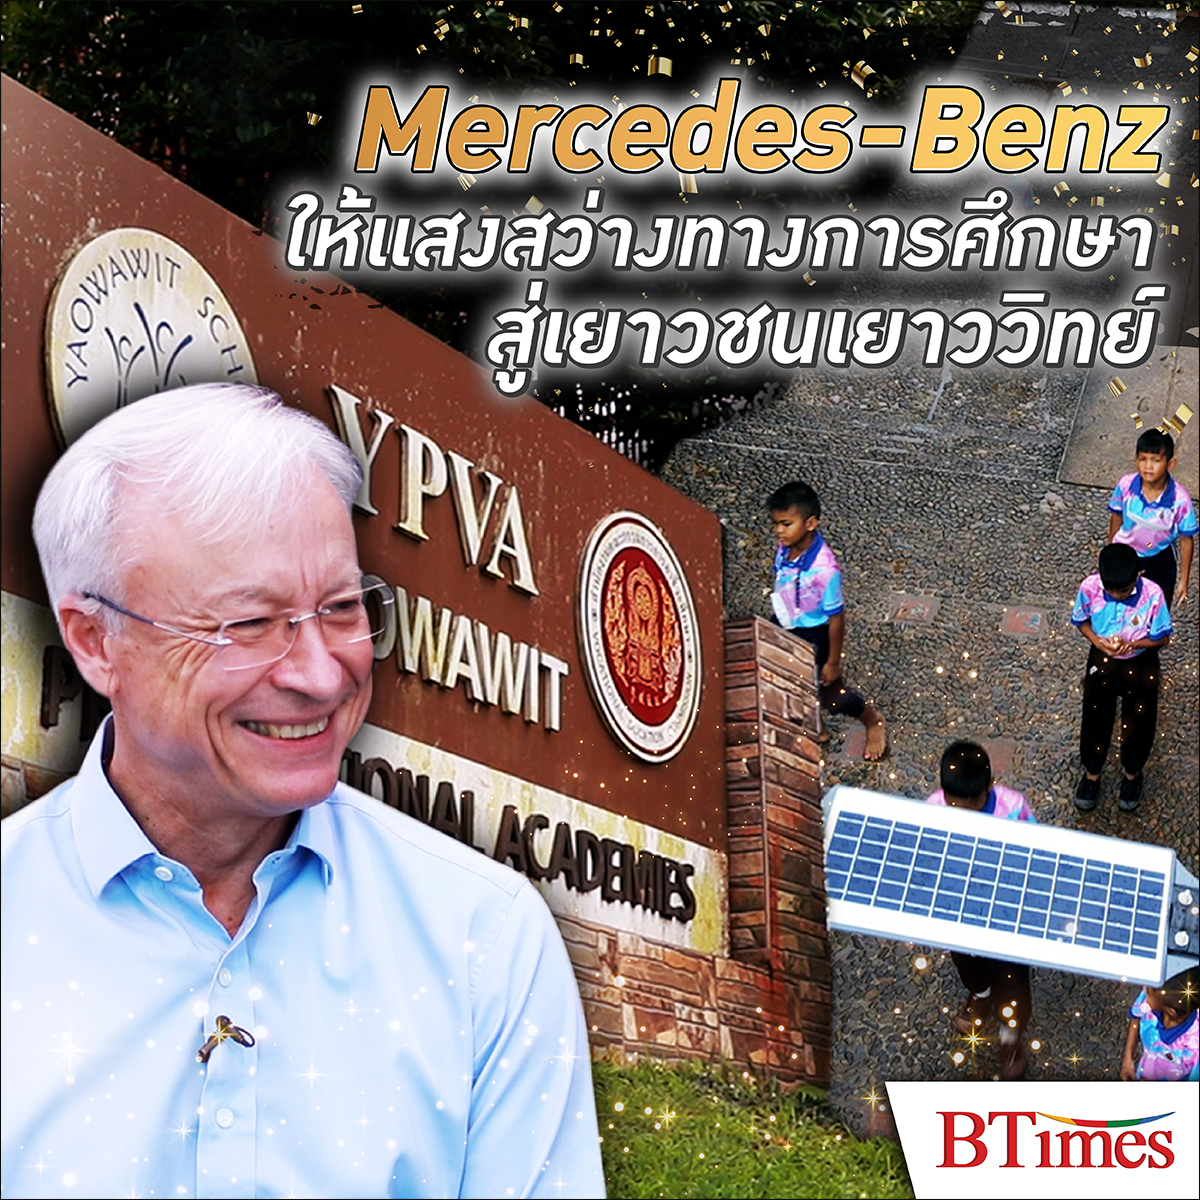 Mercedes-Benz Thailand ให้แสงสว่างทางการศึกษาสู่เยาวชนโรงเรียนเยาววิทย์